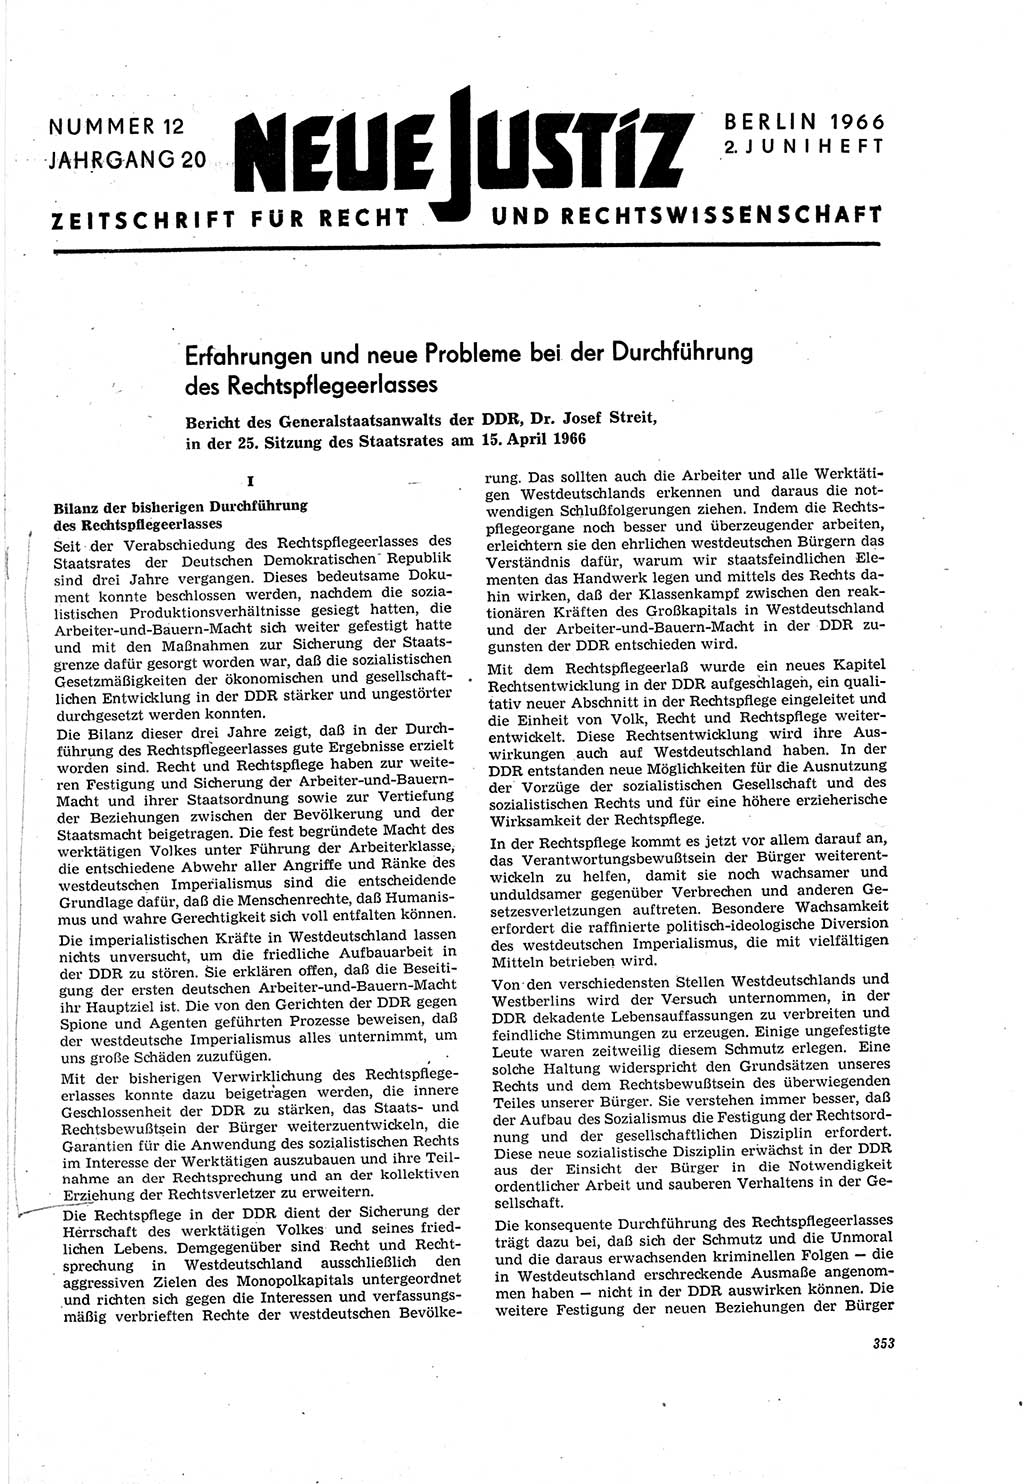 Neue Justiz (NJ), Zeitschrift für Recht und Rechtswissenschaft [Deutsche Demokratische Republik (DDR)], 20. Jahrgang 1966, Seite 353 (NJ DDR 1966, S. 353)